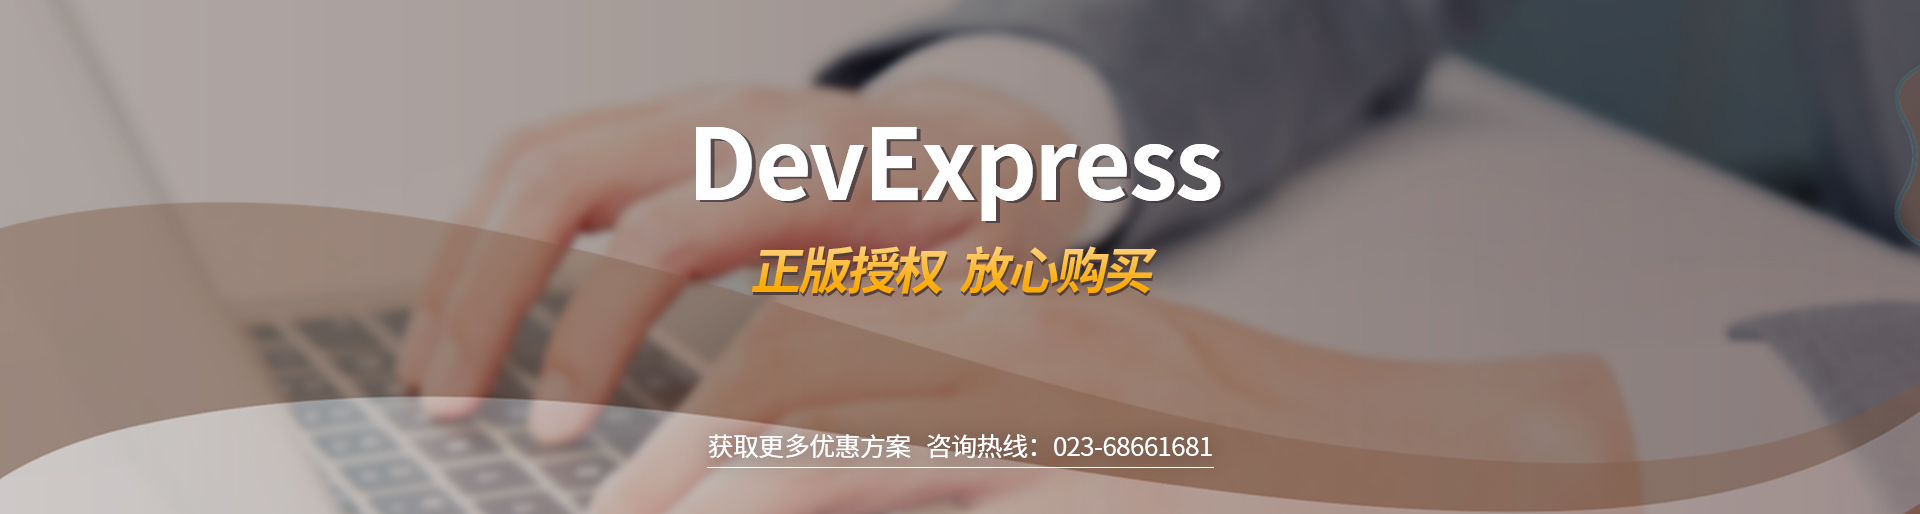 DevExpress正版授权购买